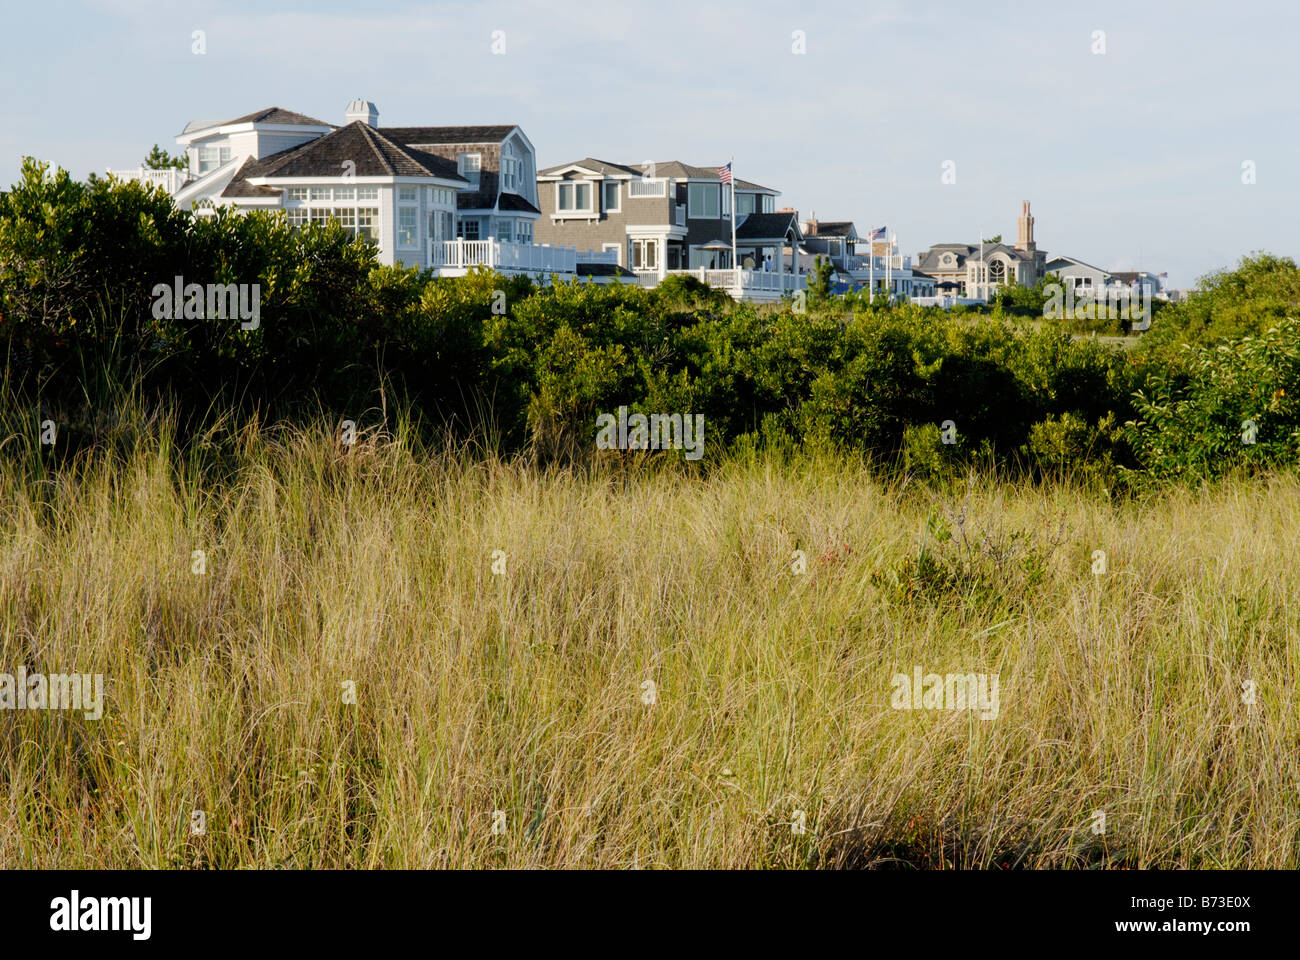 Maisons haut de gamme, Avalon Oceanside, New Jersey. Un tampon d'herbes de dunes protège le littoral de l'érosion. Banque D'Images